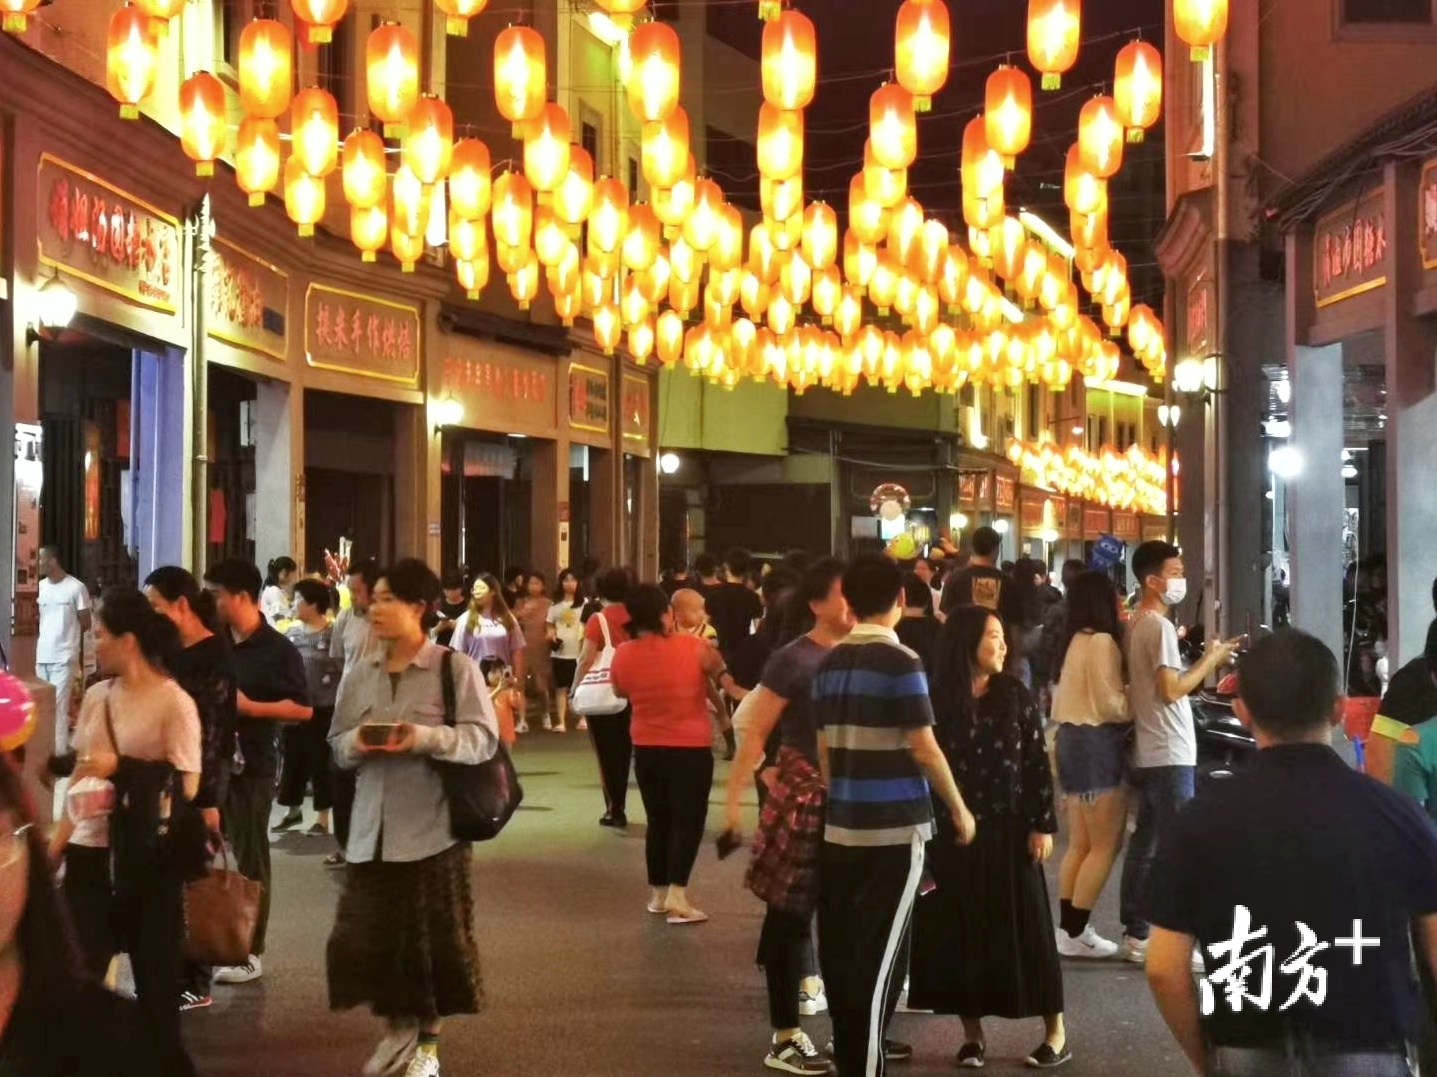 市民和游客漫步于老街,欣赏夜景,品赏美食.